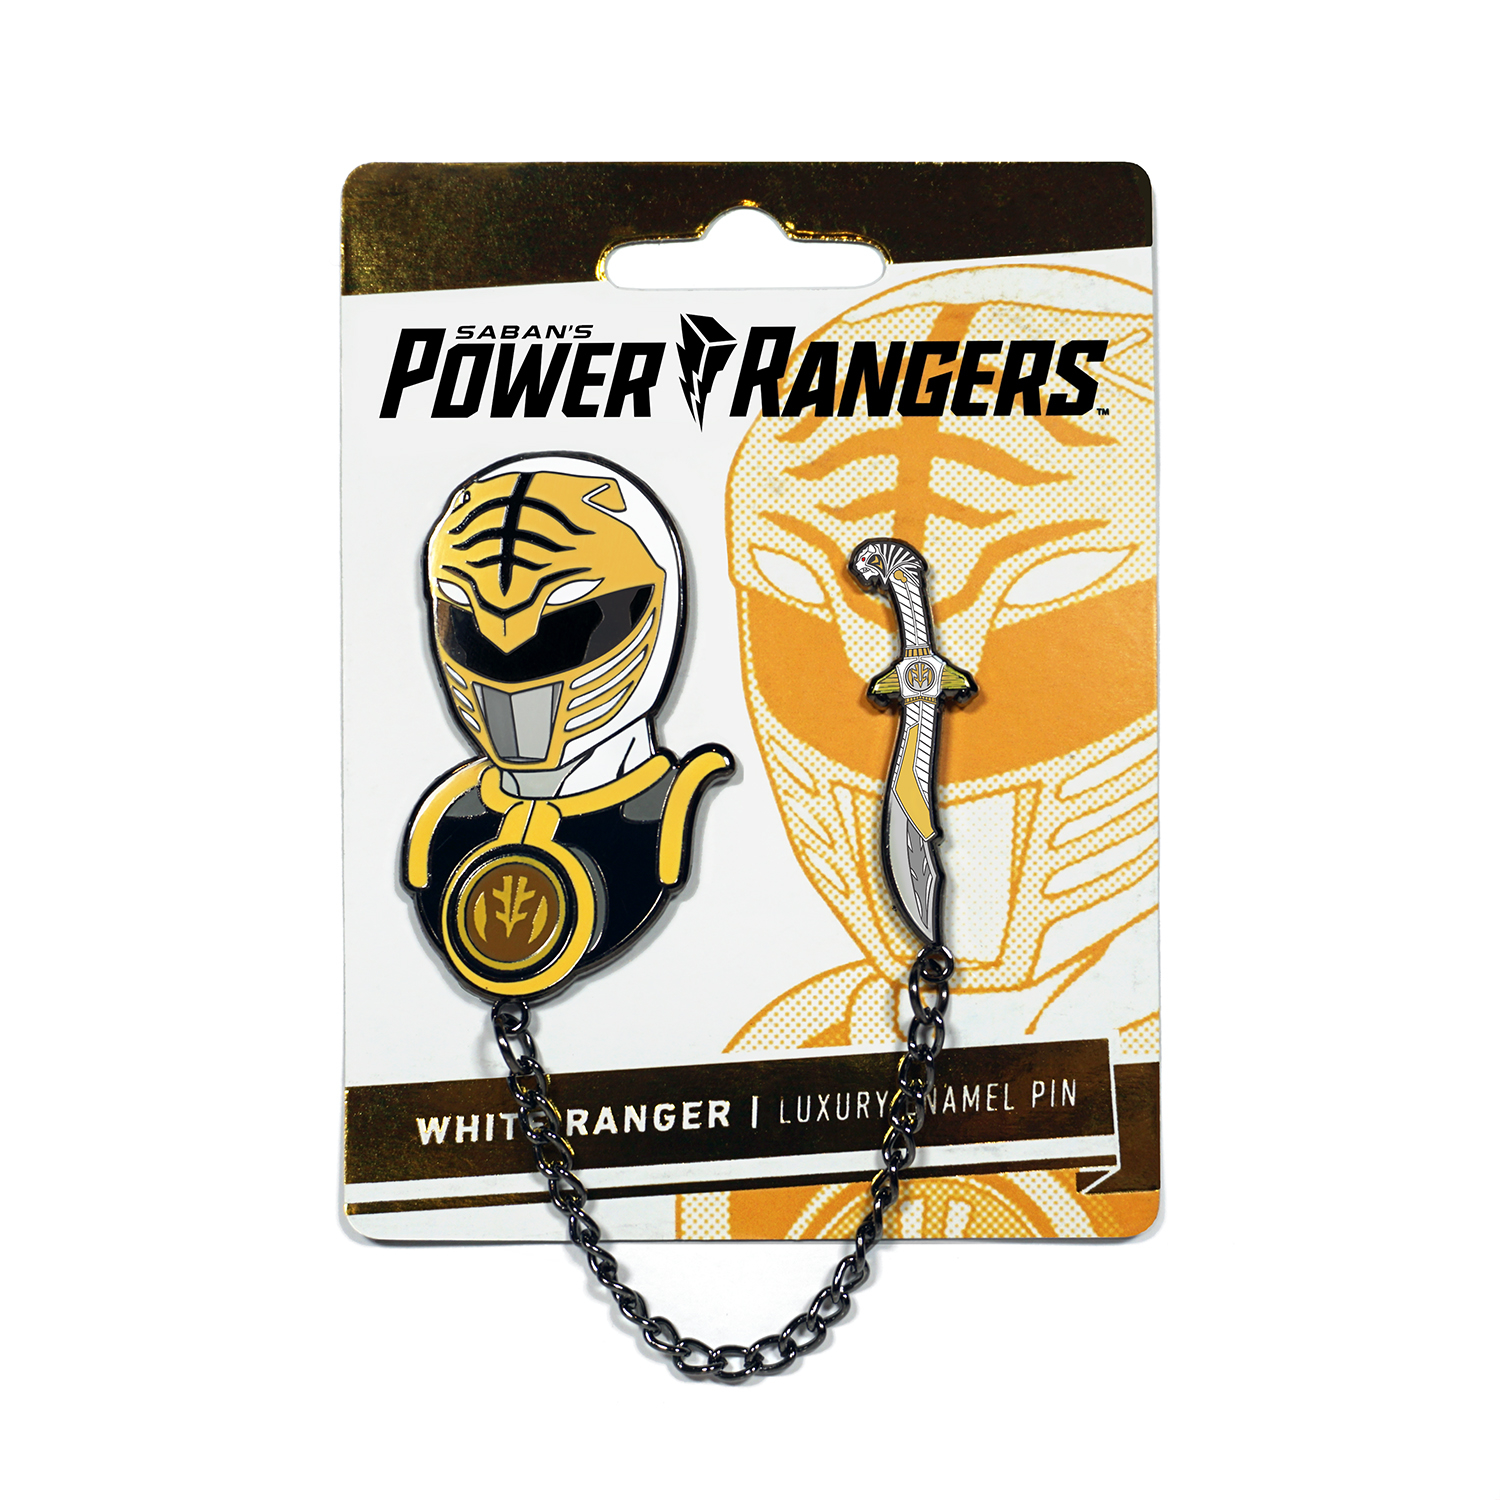 FEB208103 - POWER RANGERS WHITE RANGER ENAMEL PIN - Previews World